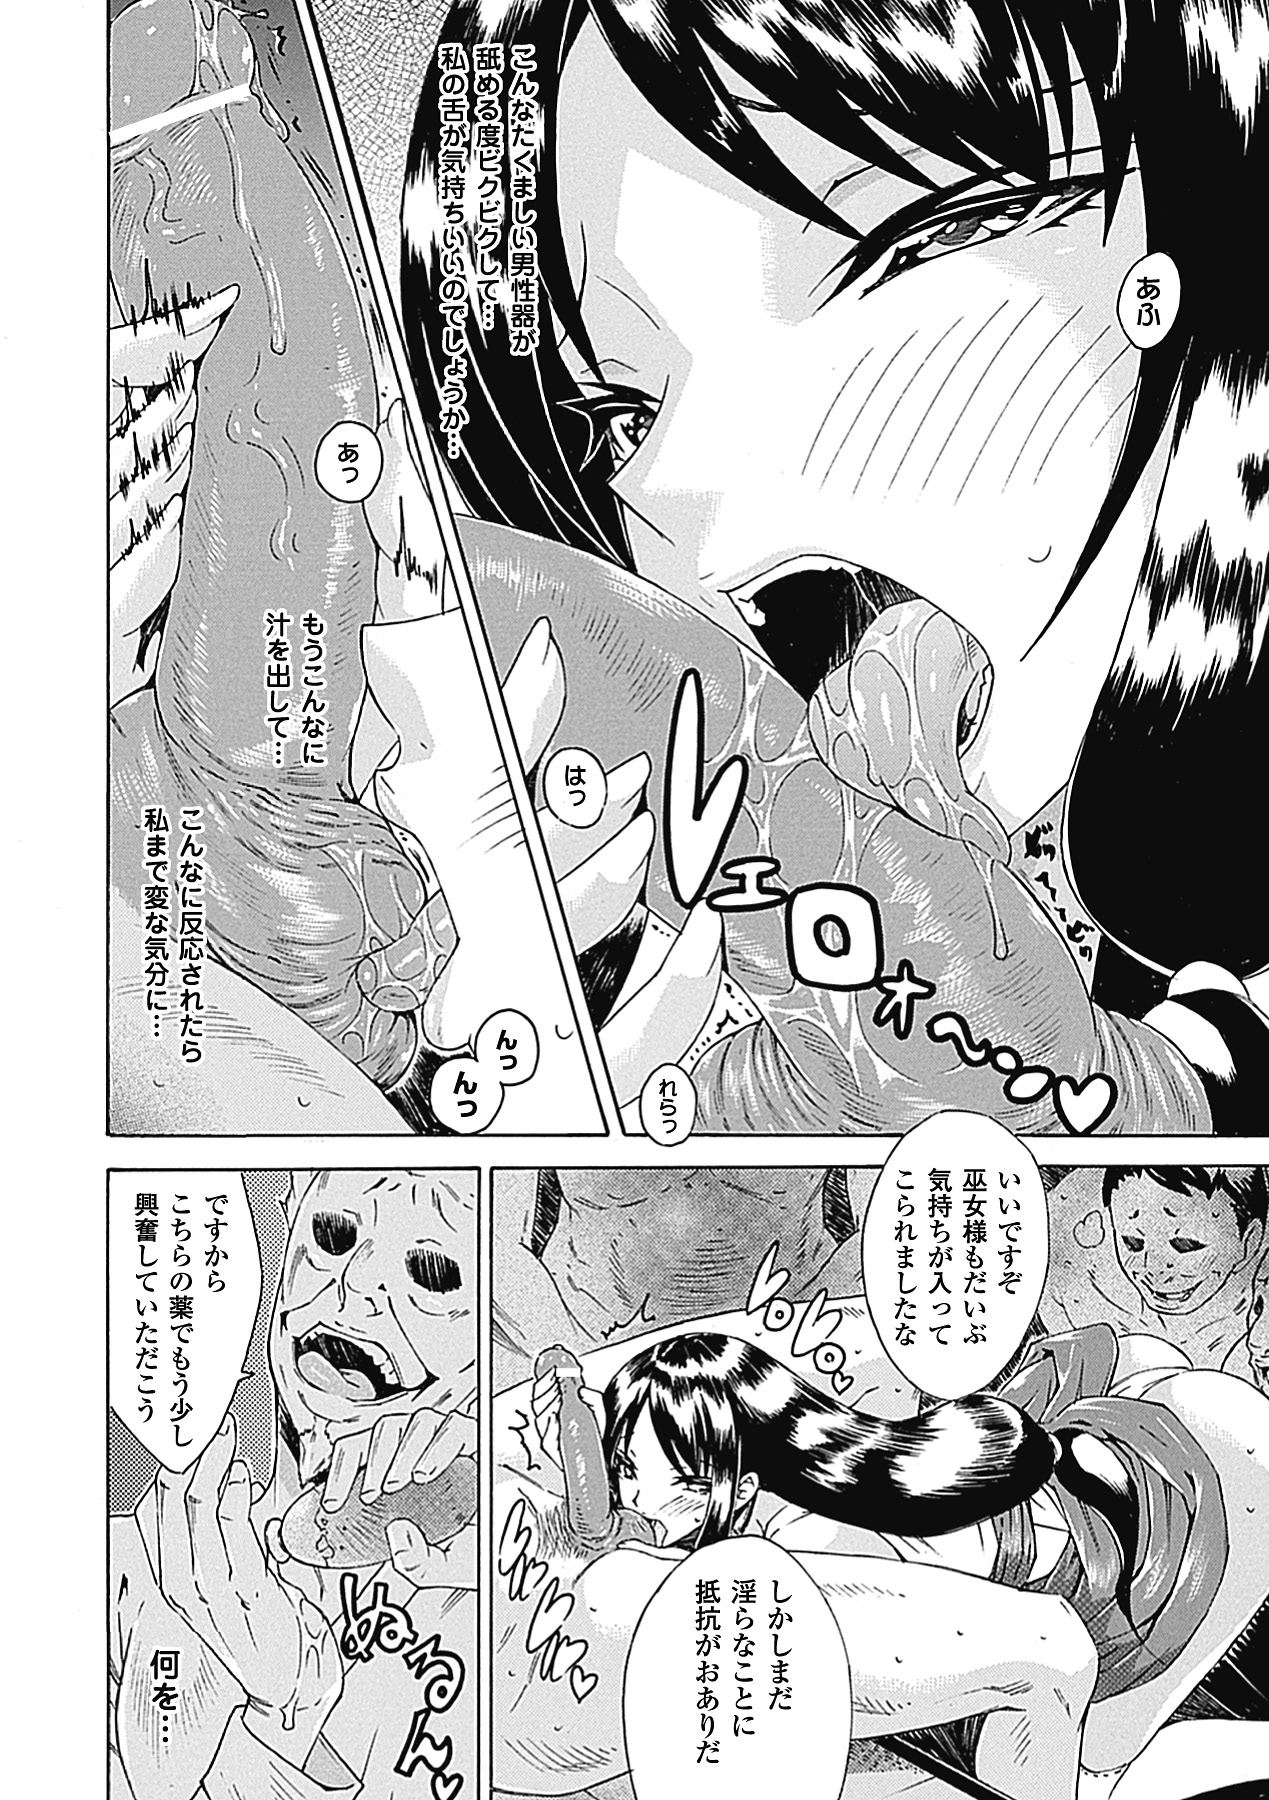 [Anthology] Nakadashi Haramase Anthology Comics Vol.8 [Digital] page 10 full